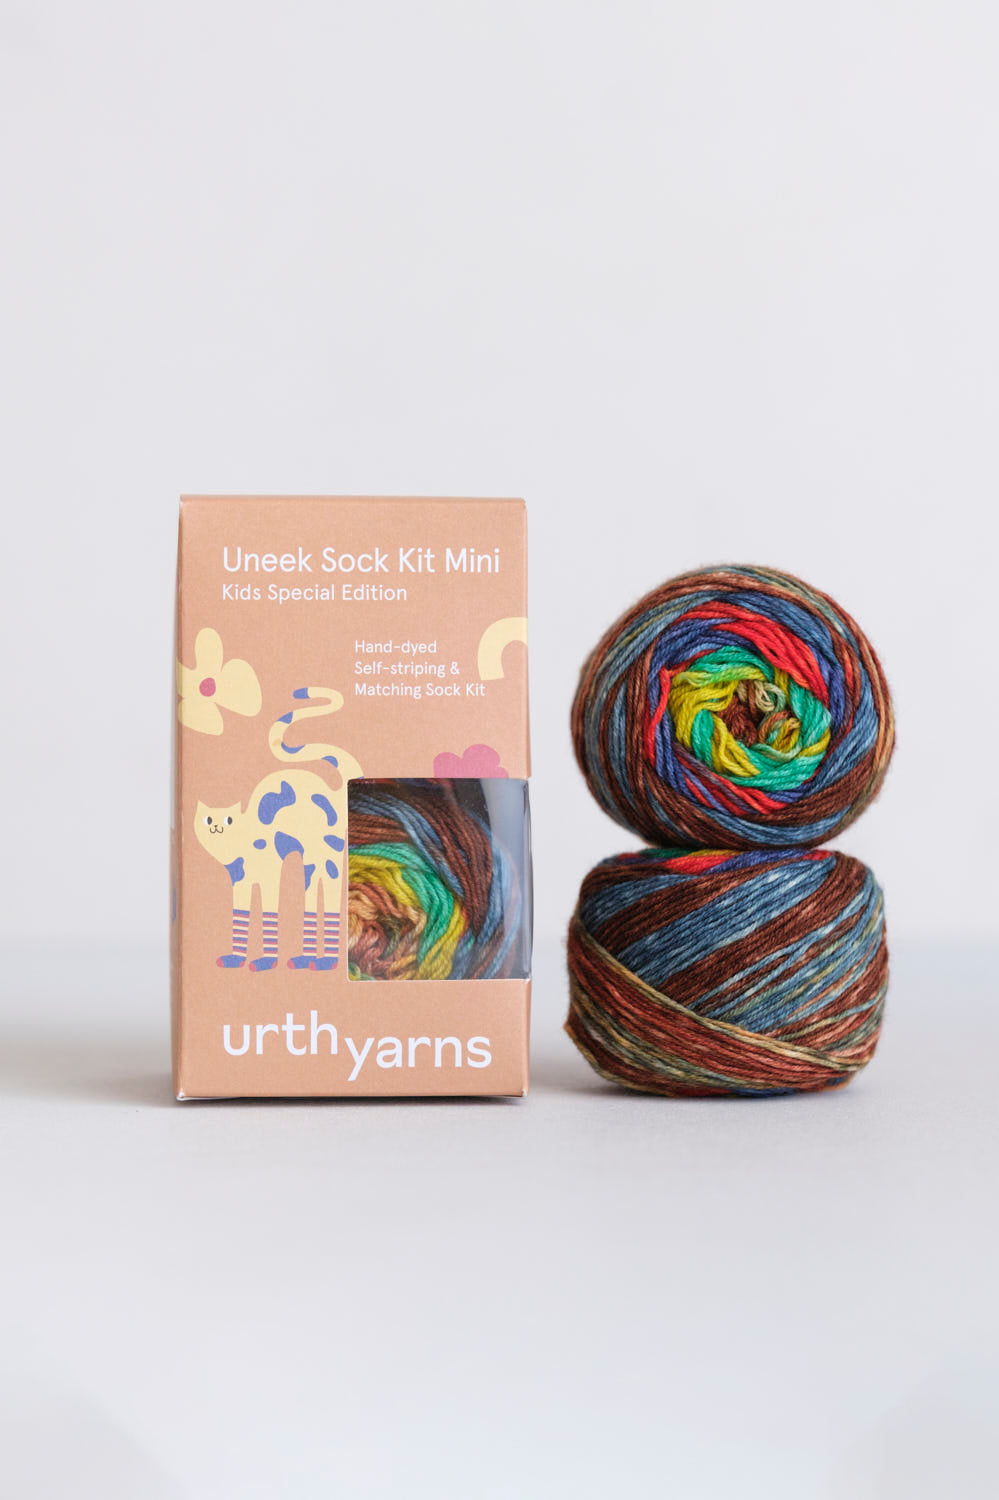 Mini Uneek Sock Kits